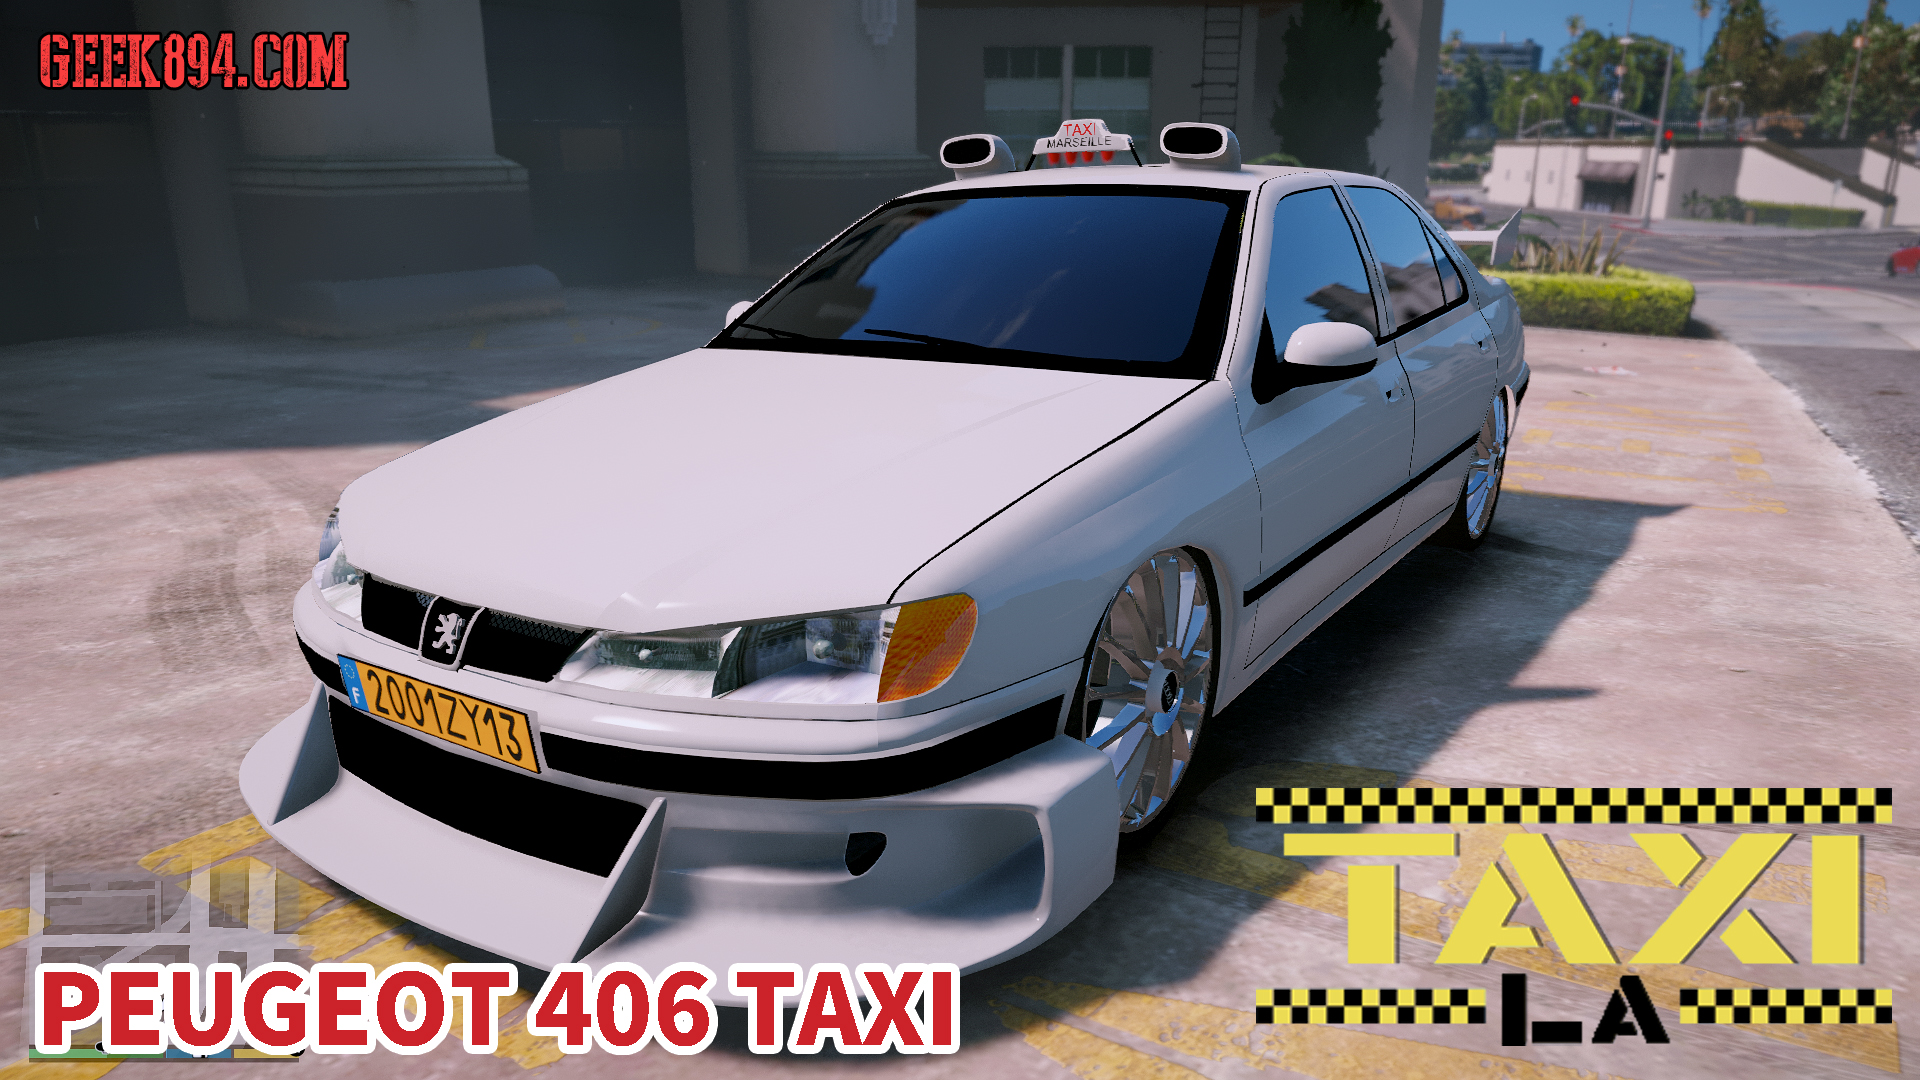 Gta5のタクシーを映画taxiのプジョー406にしちゃう車両mod発見 動画有り Geek4 Com